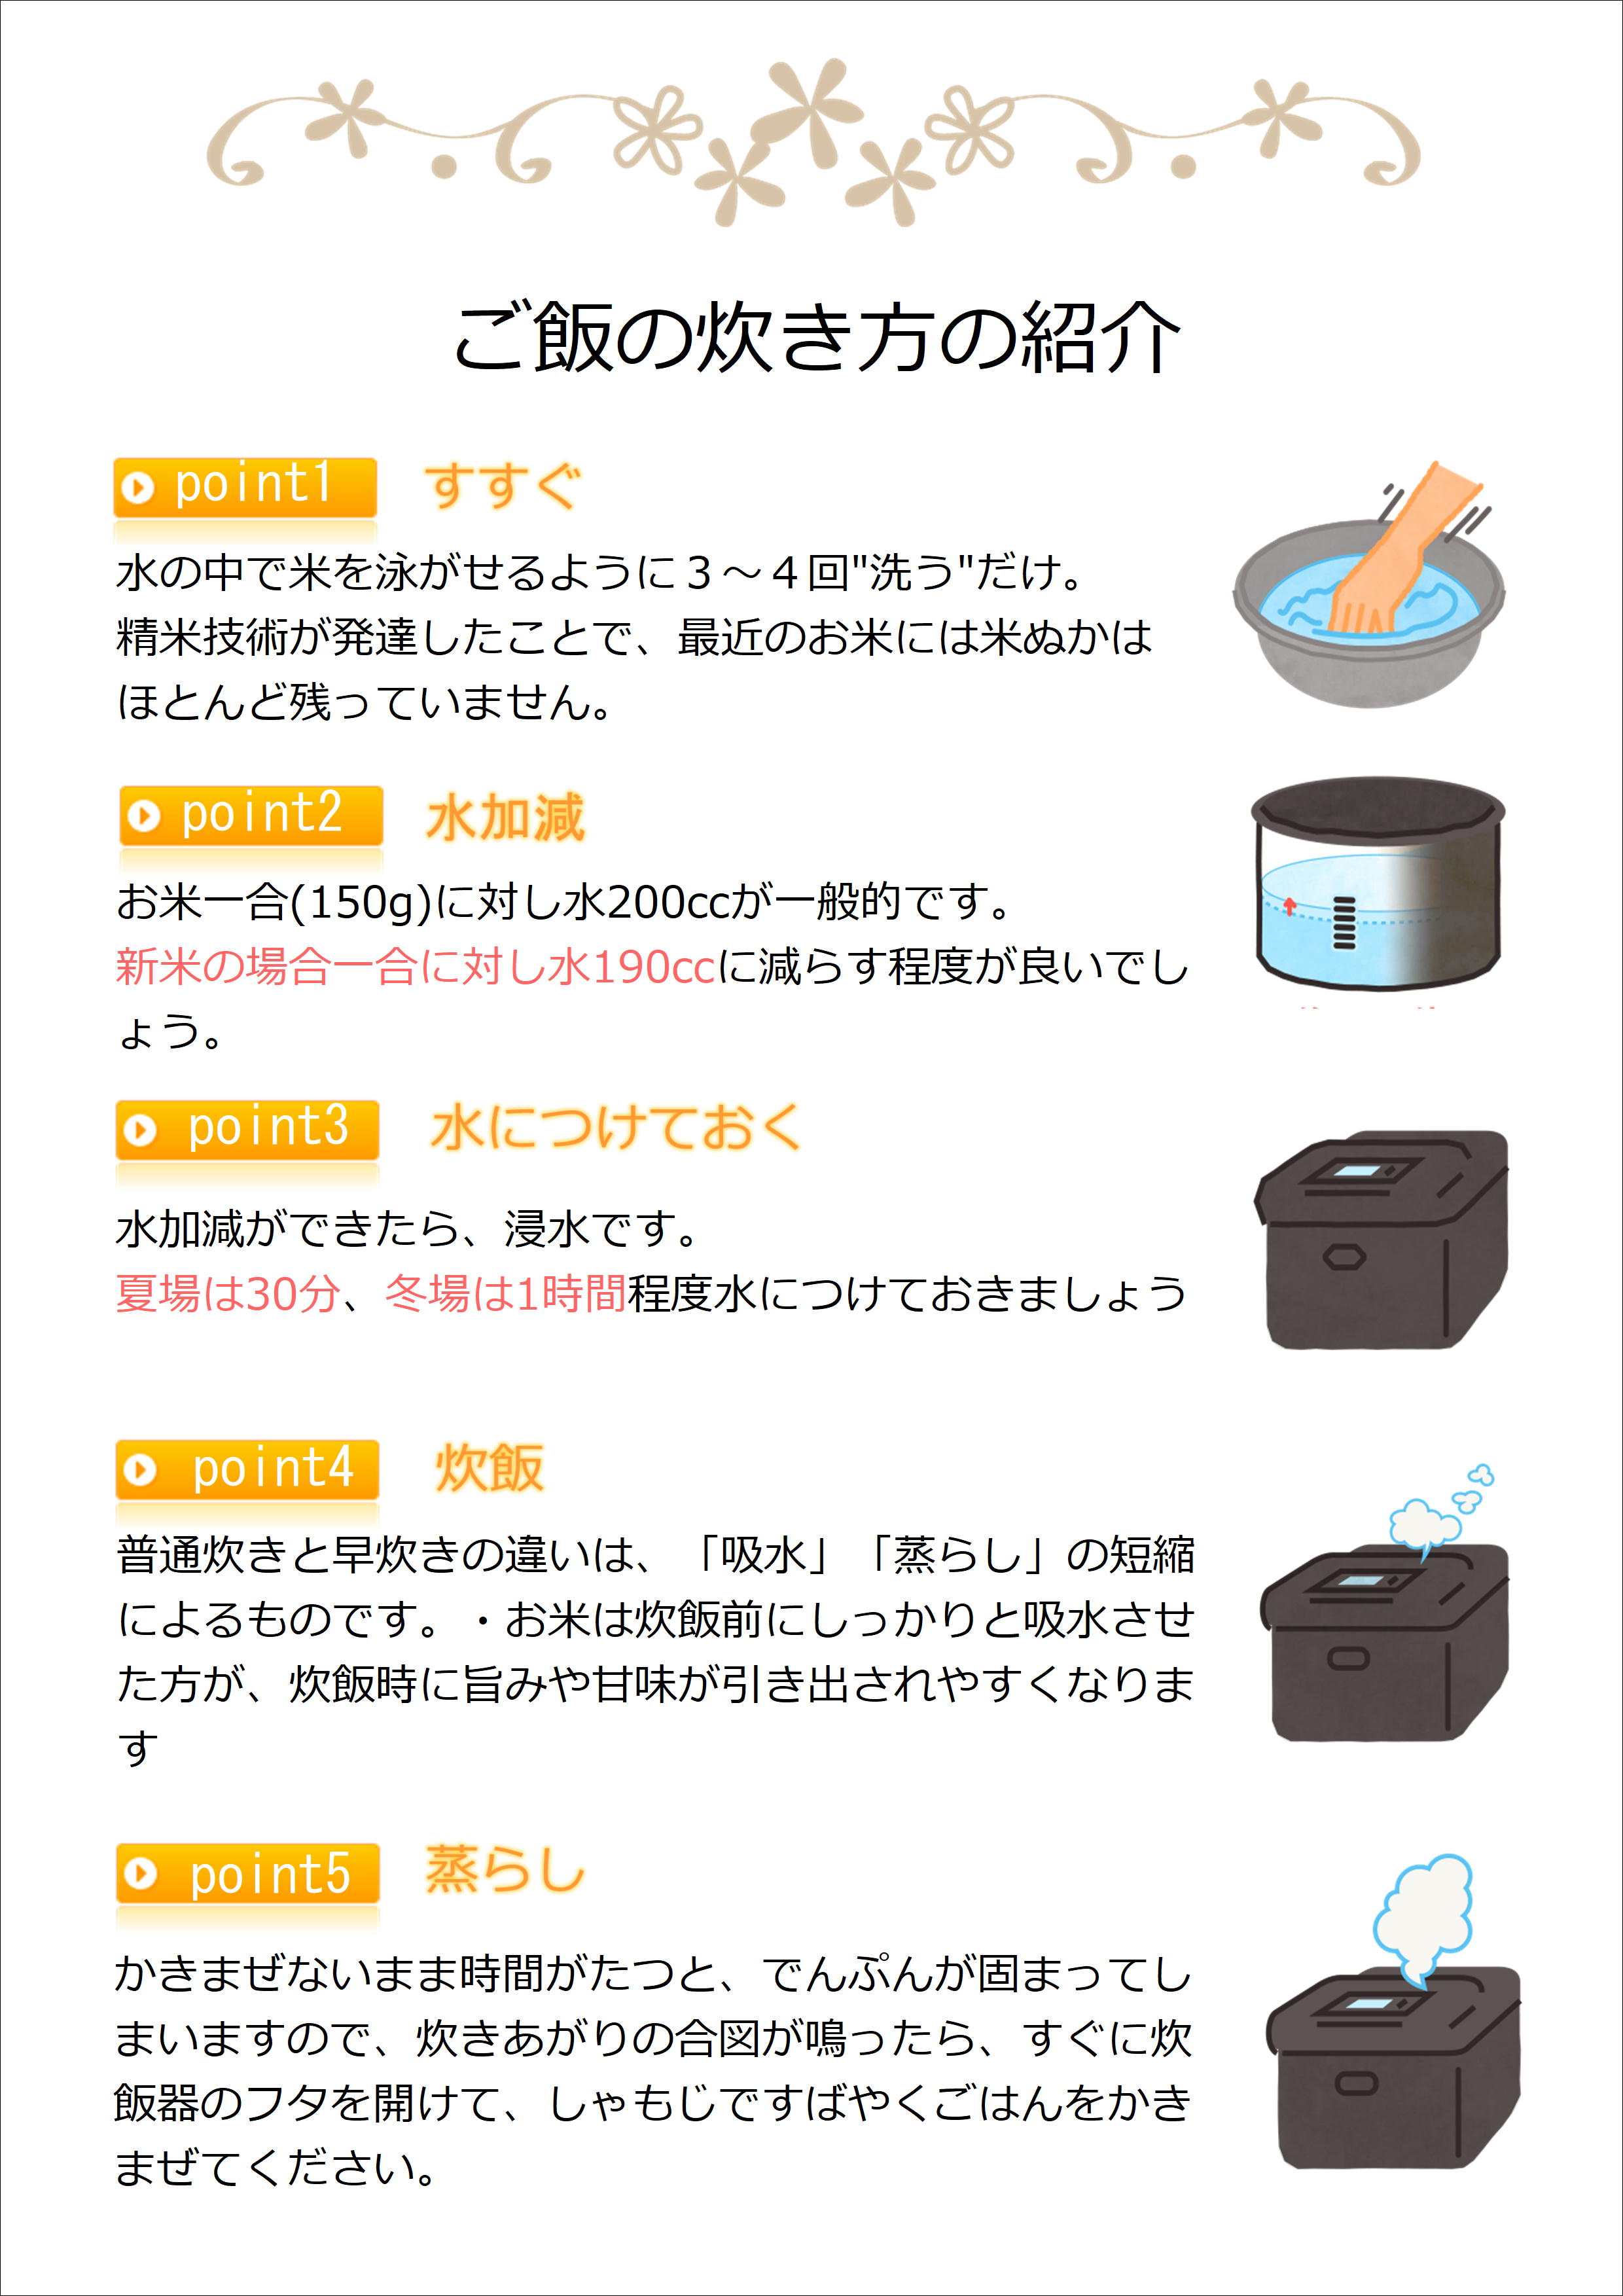 米杜氏 特別栽培コシヒカリ＆新之助 食べ比べ10kgセット(5kg×2袋) 1H10018